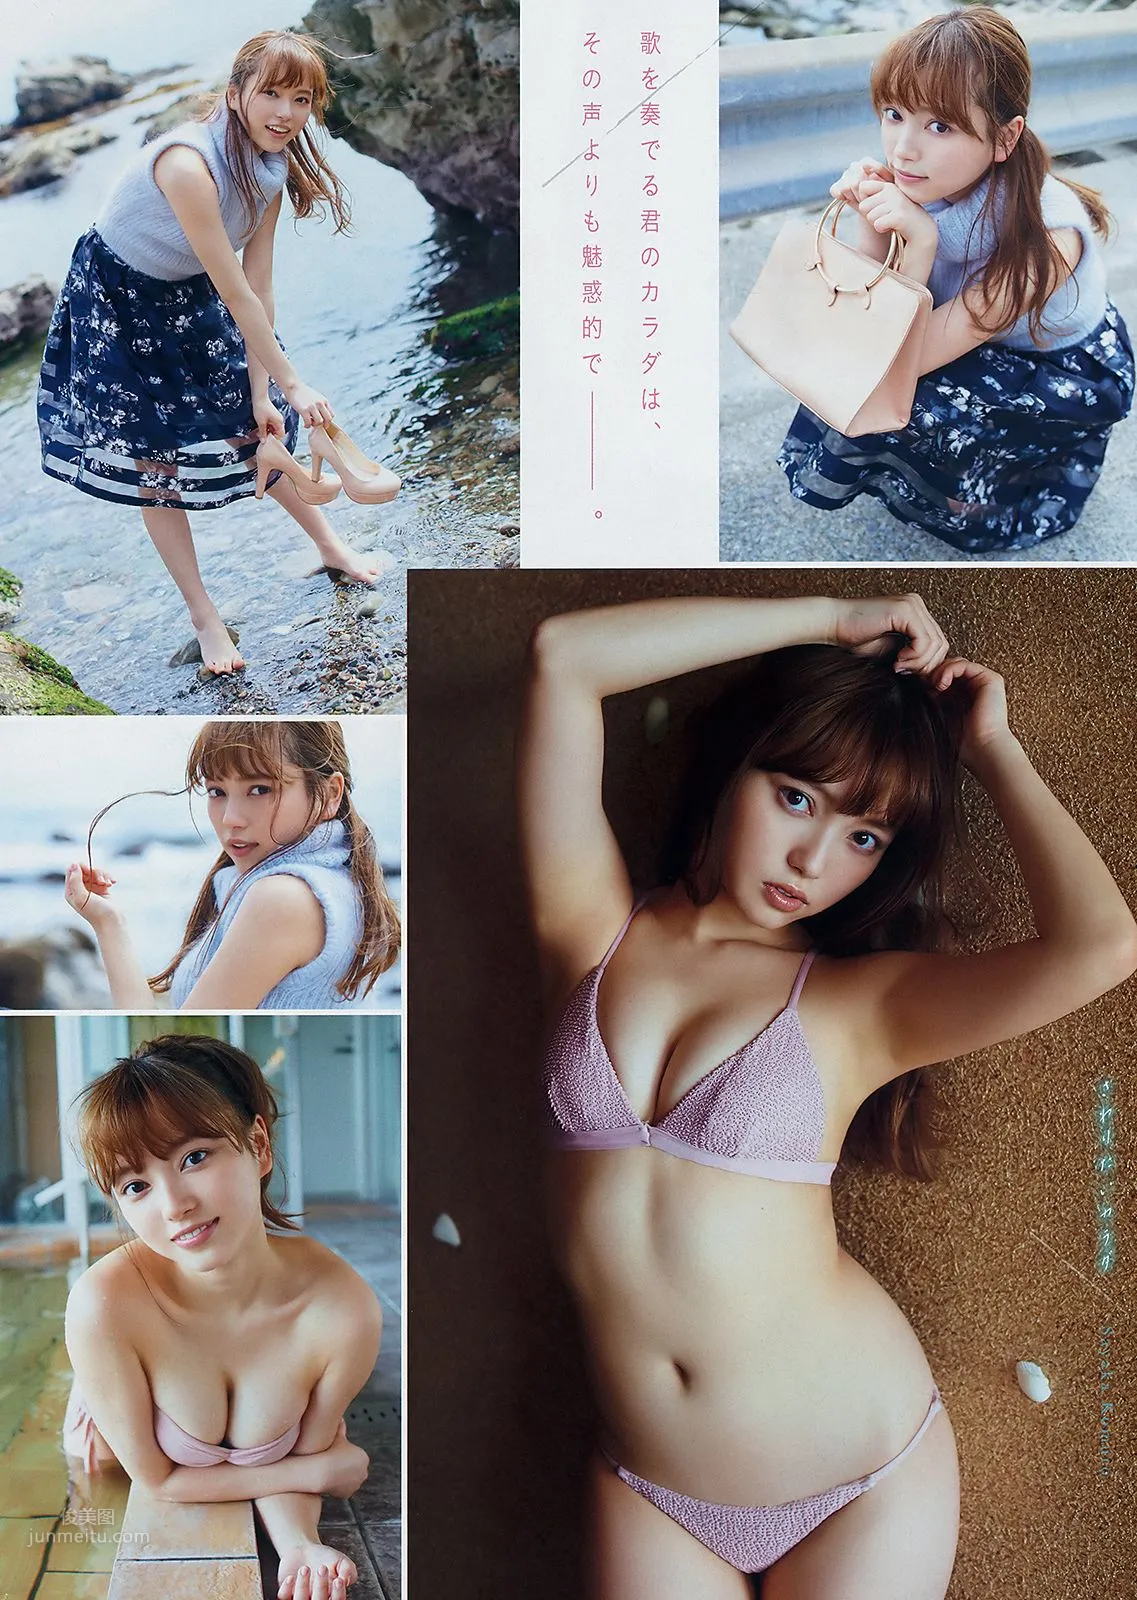 小室さやか, Sayaka Komuro - Weekly SPA!, Young Animal, Young Magazine, Young Gangan, 2019_1